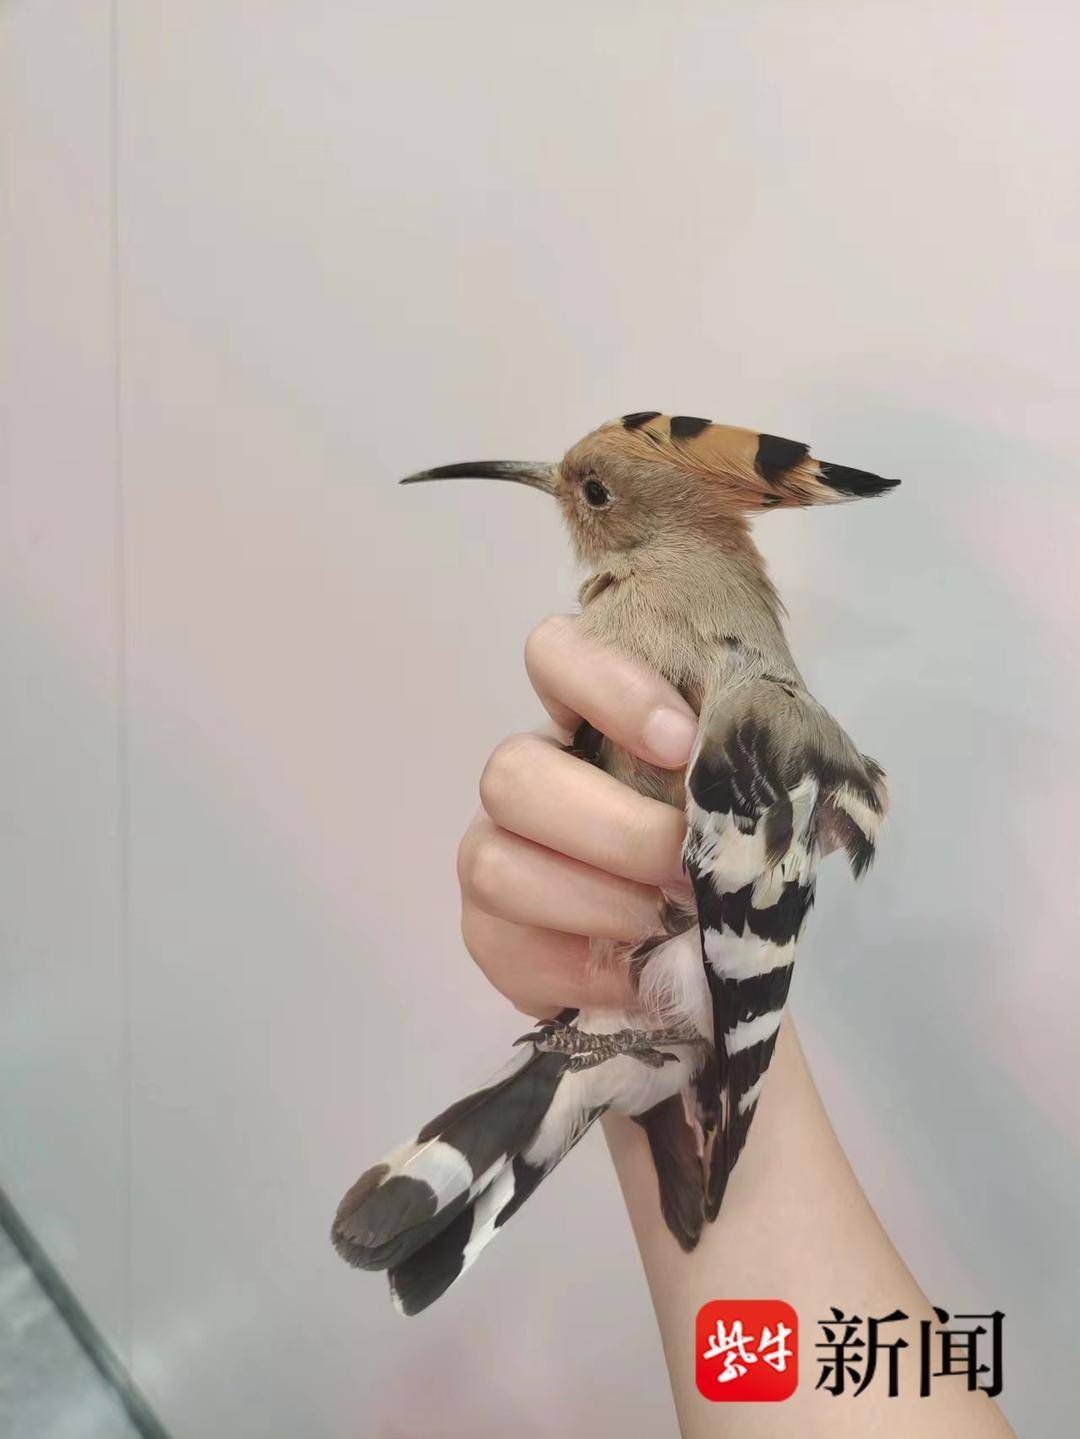 琅琊派出所：救起受伤小鸟 原是珍稀物种-青岛西海岸新闻网